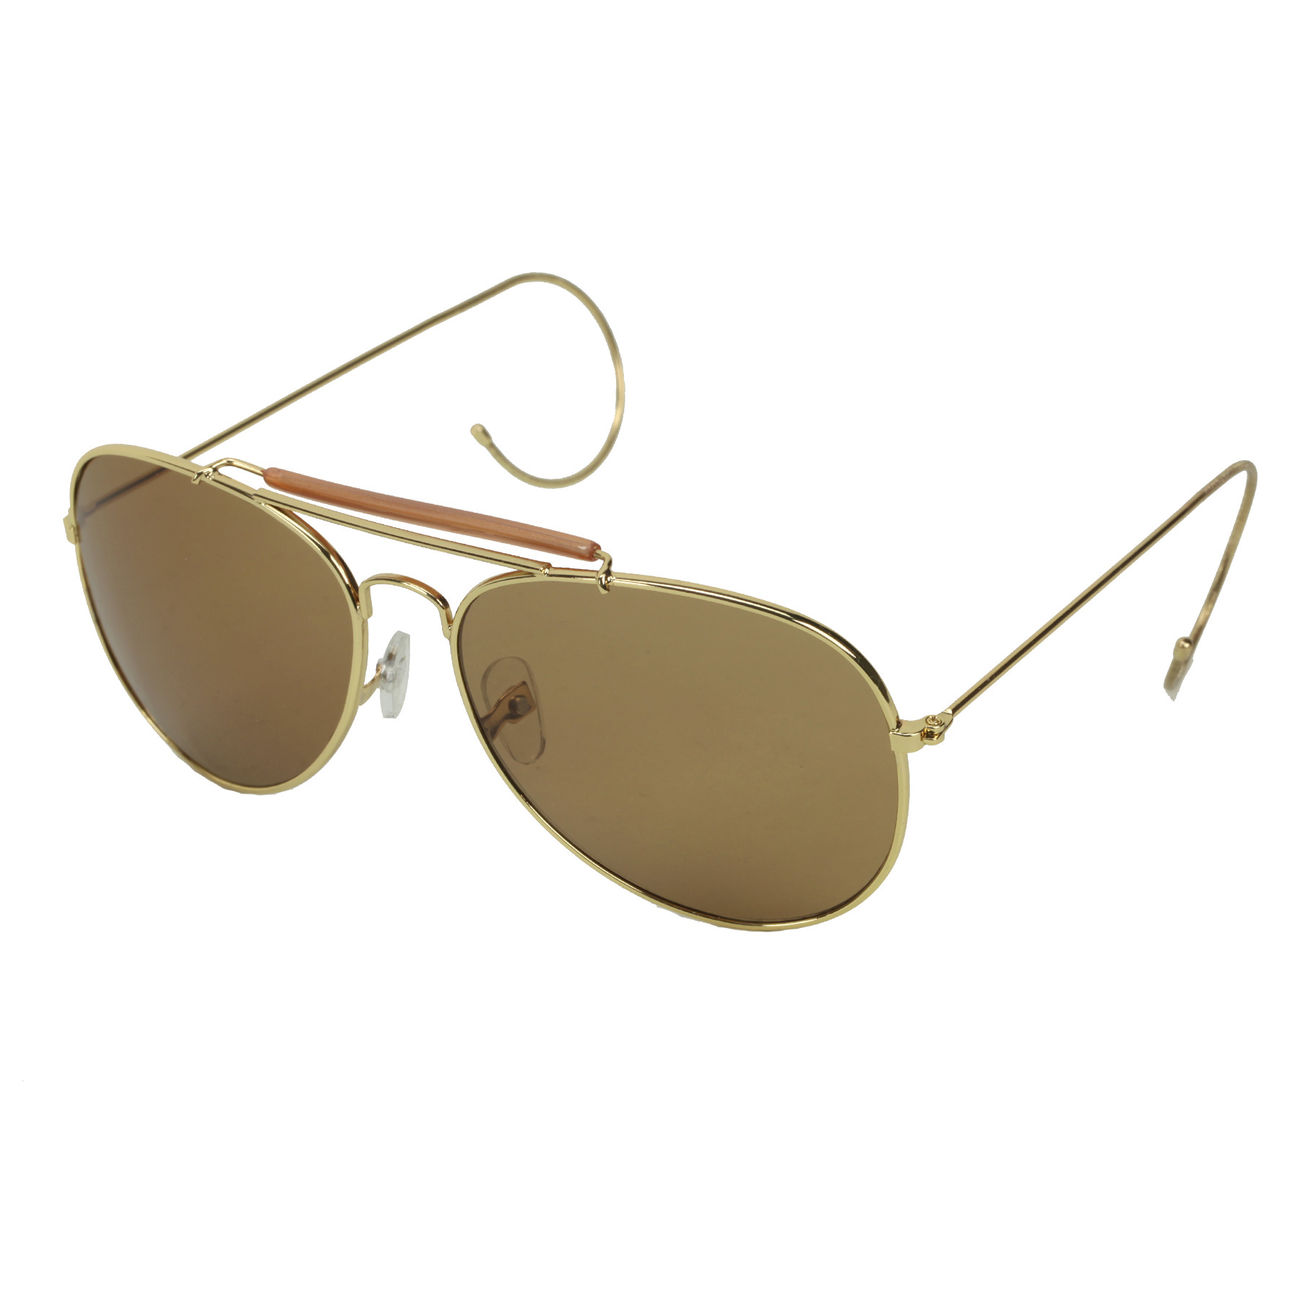 US Pilotenbrille Aviator Fliegerbrille, braune Gläser